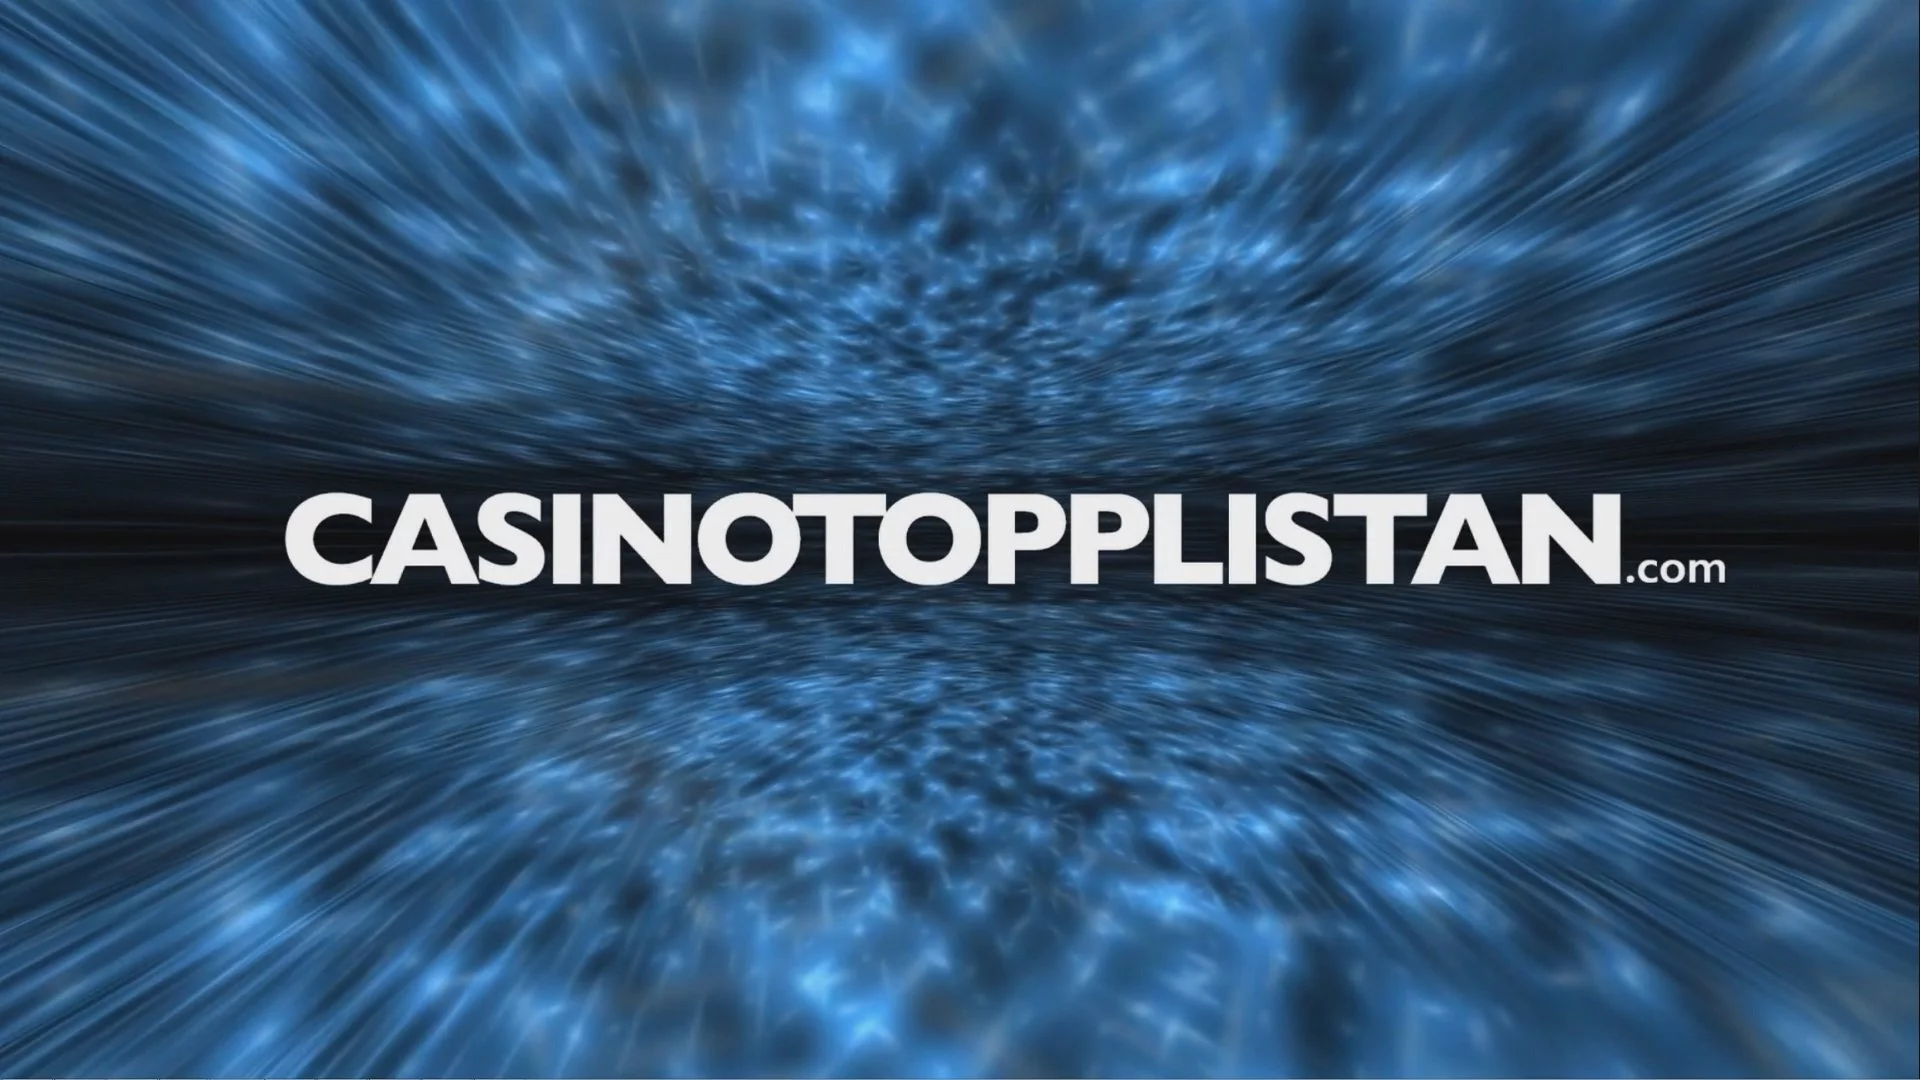 Casinotopplistan.com backgrundsbild i mörkblått